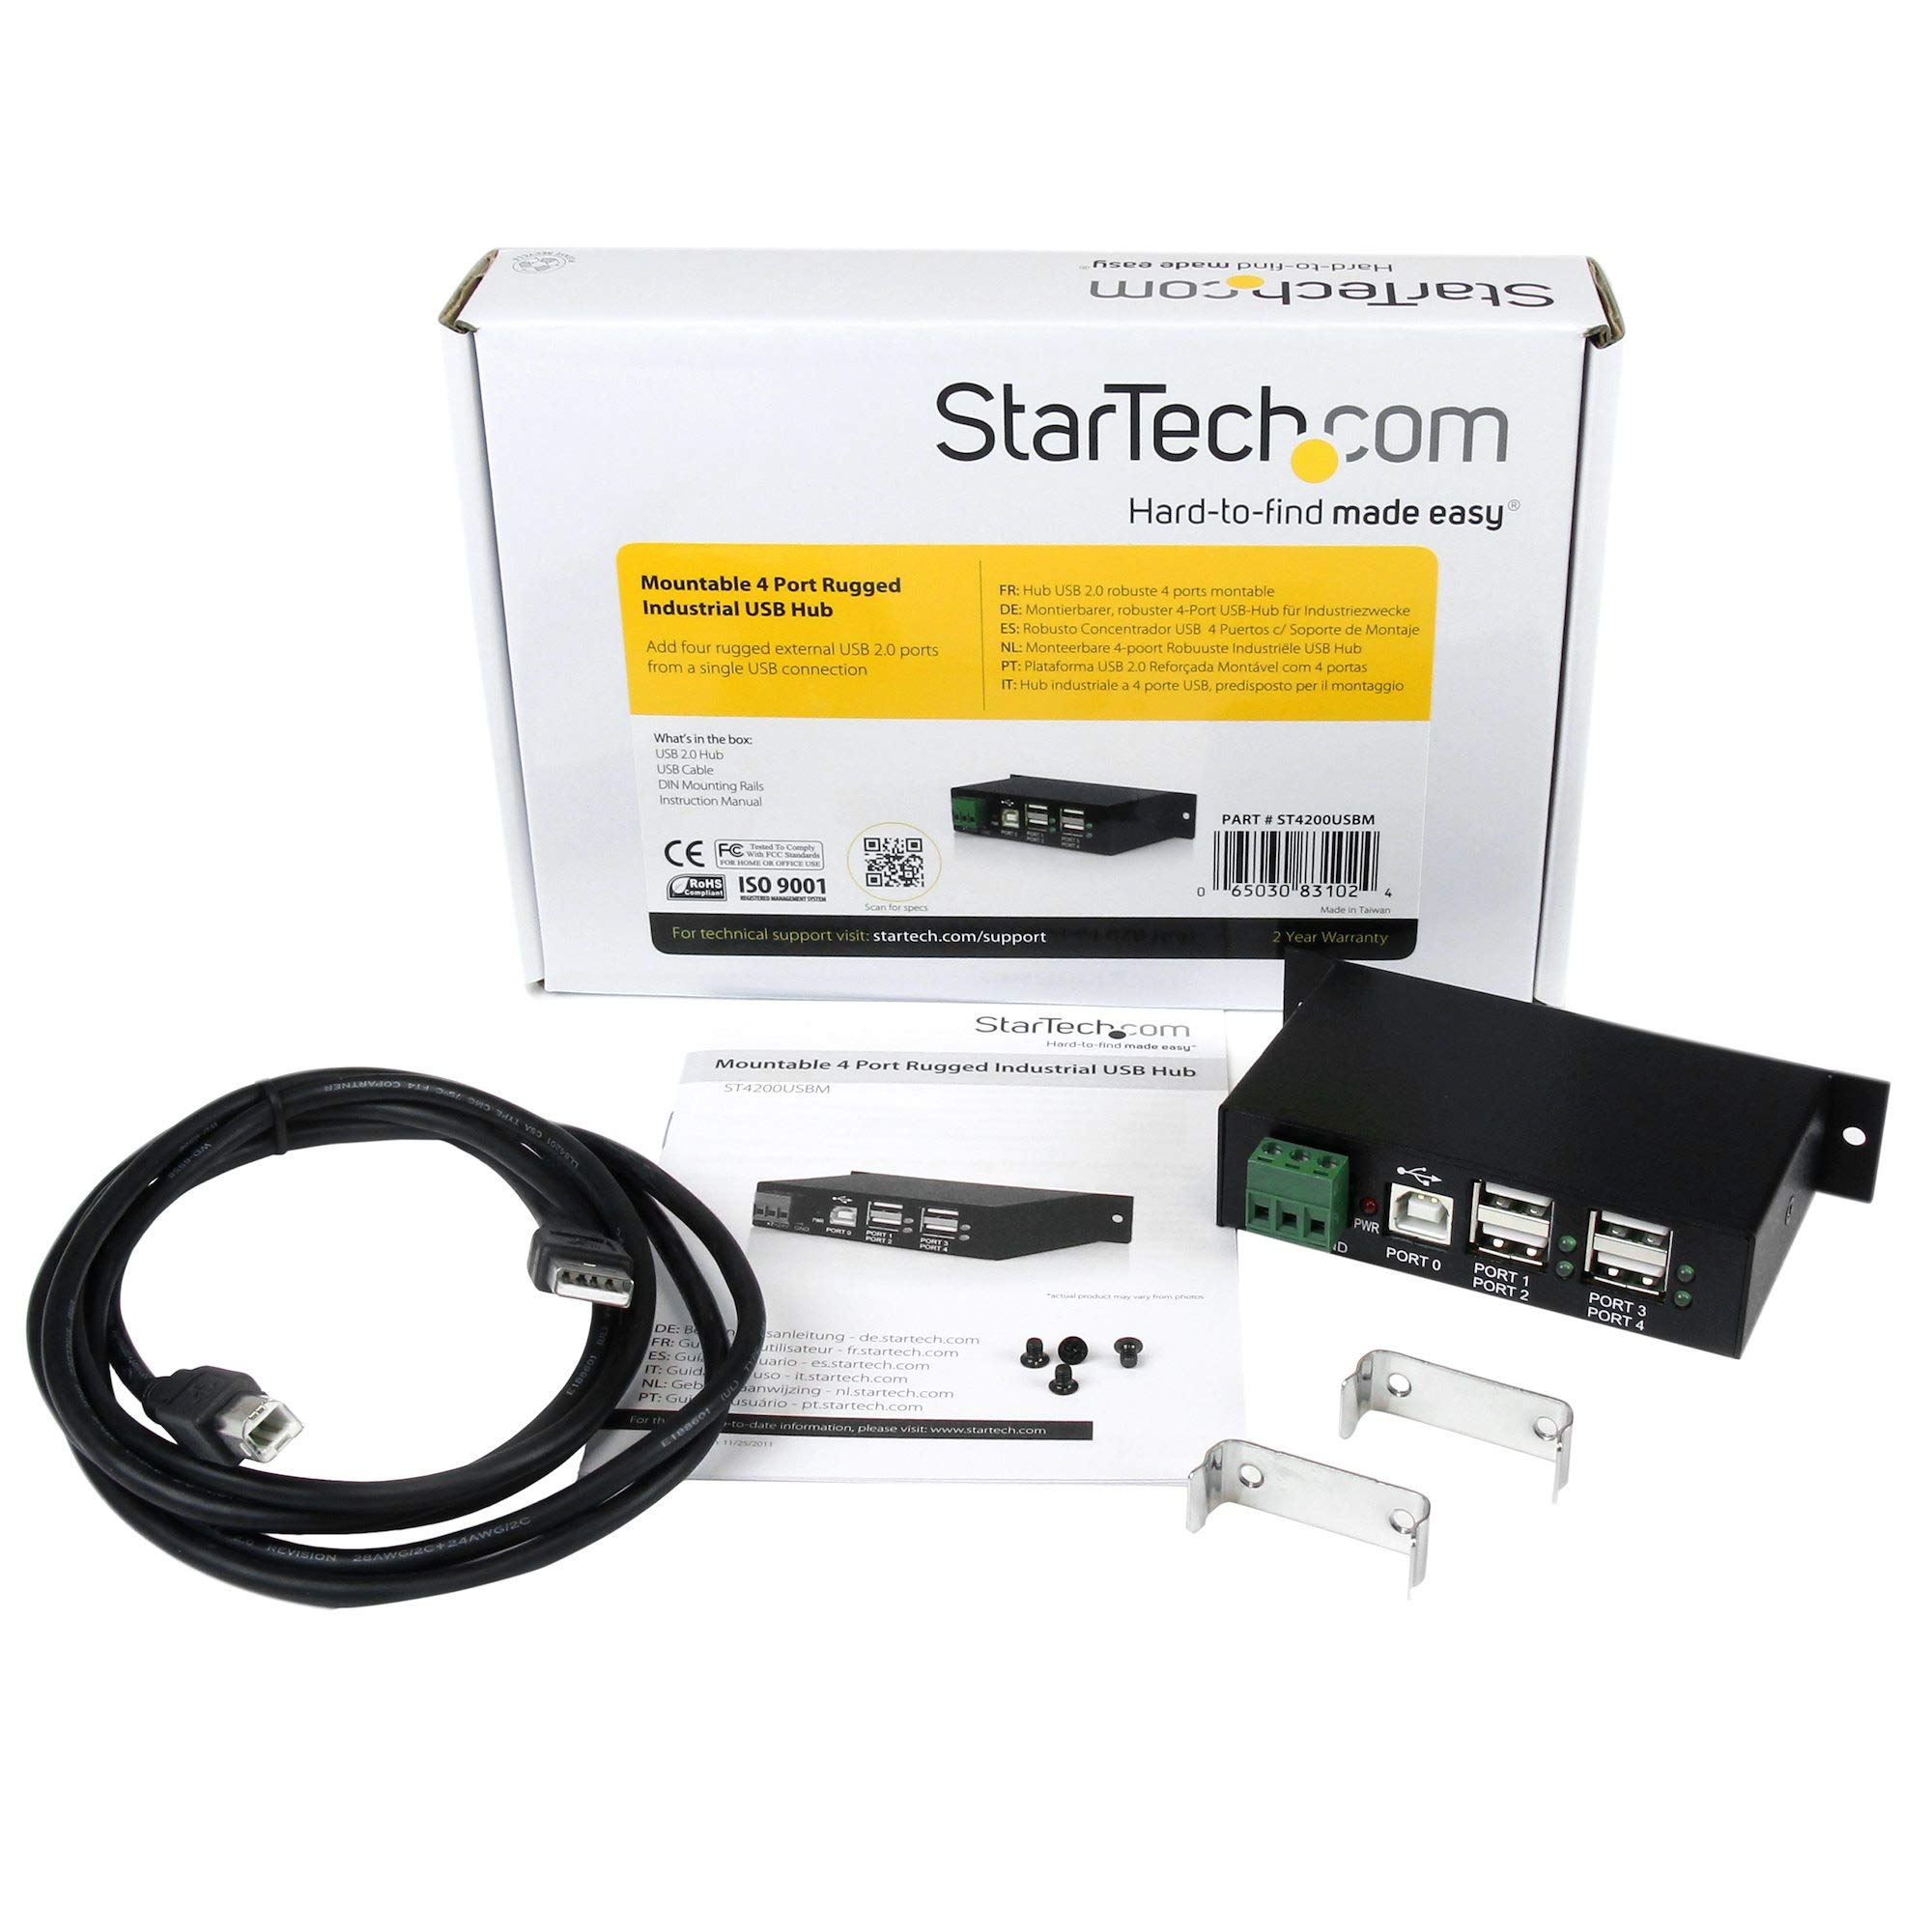 StarTech.com 4-Port USB 2.0 Hub - Metal Industrial USB-A Hub - Din Rail, Wall or Desk Mountable USB Data Hub - TAA Compliant USB Expander Hub (ST4200USBM)